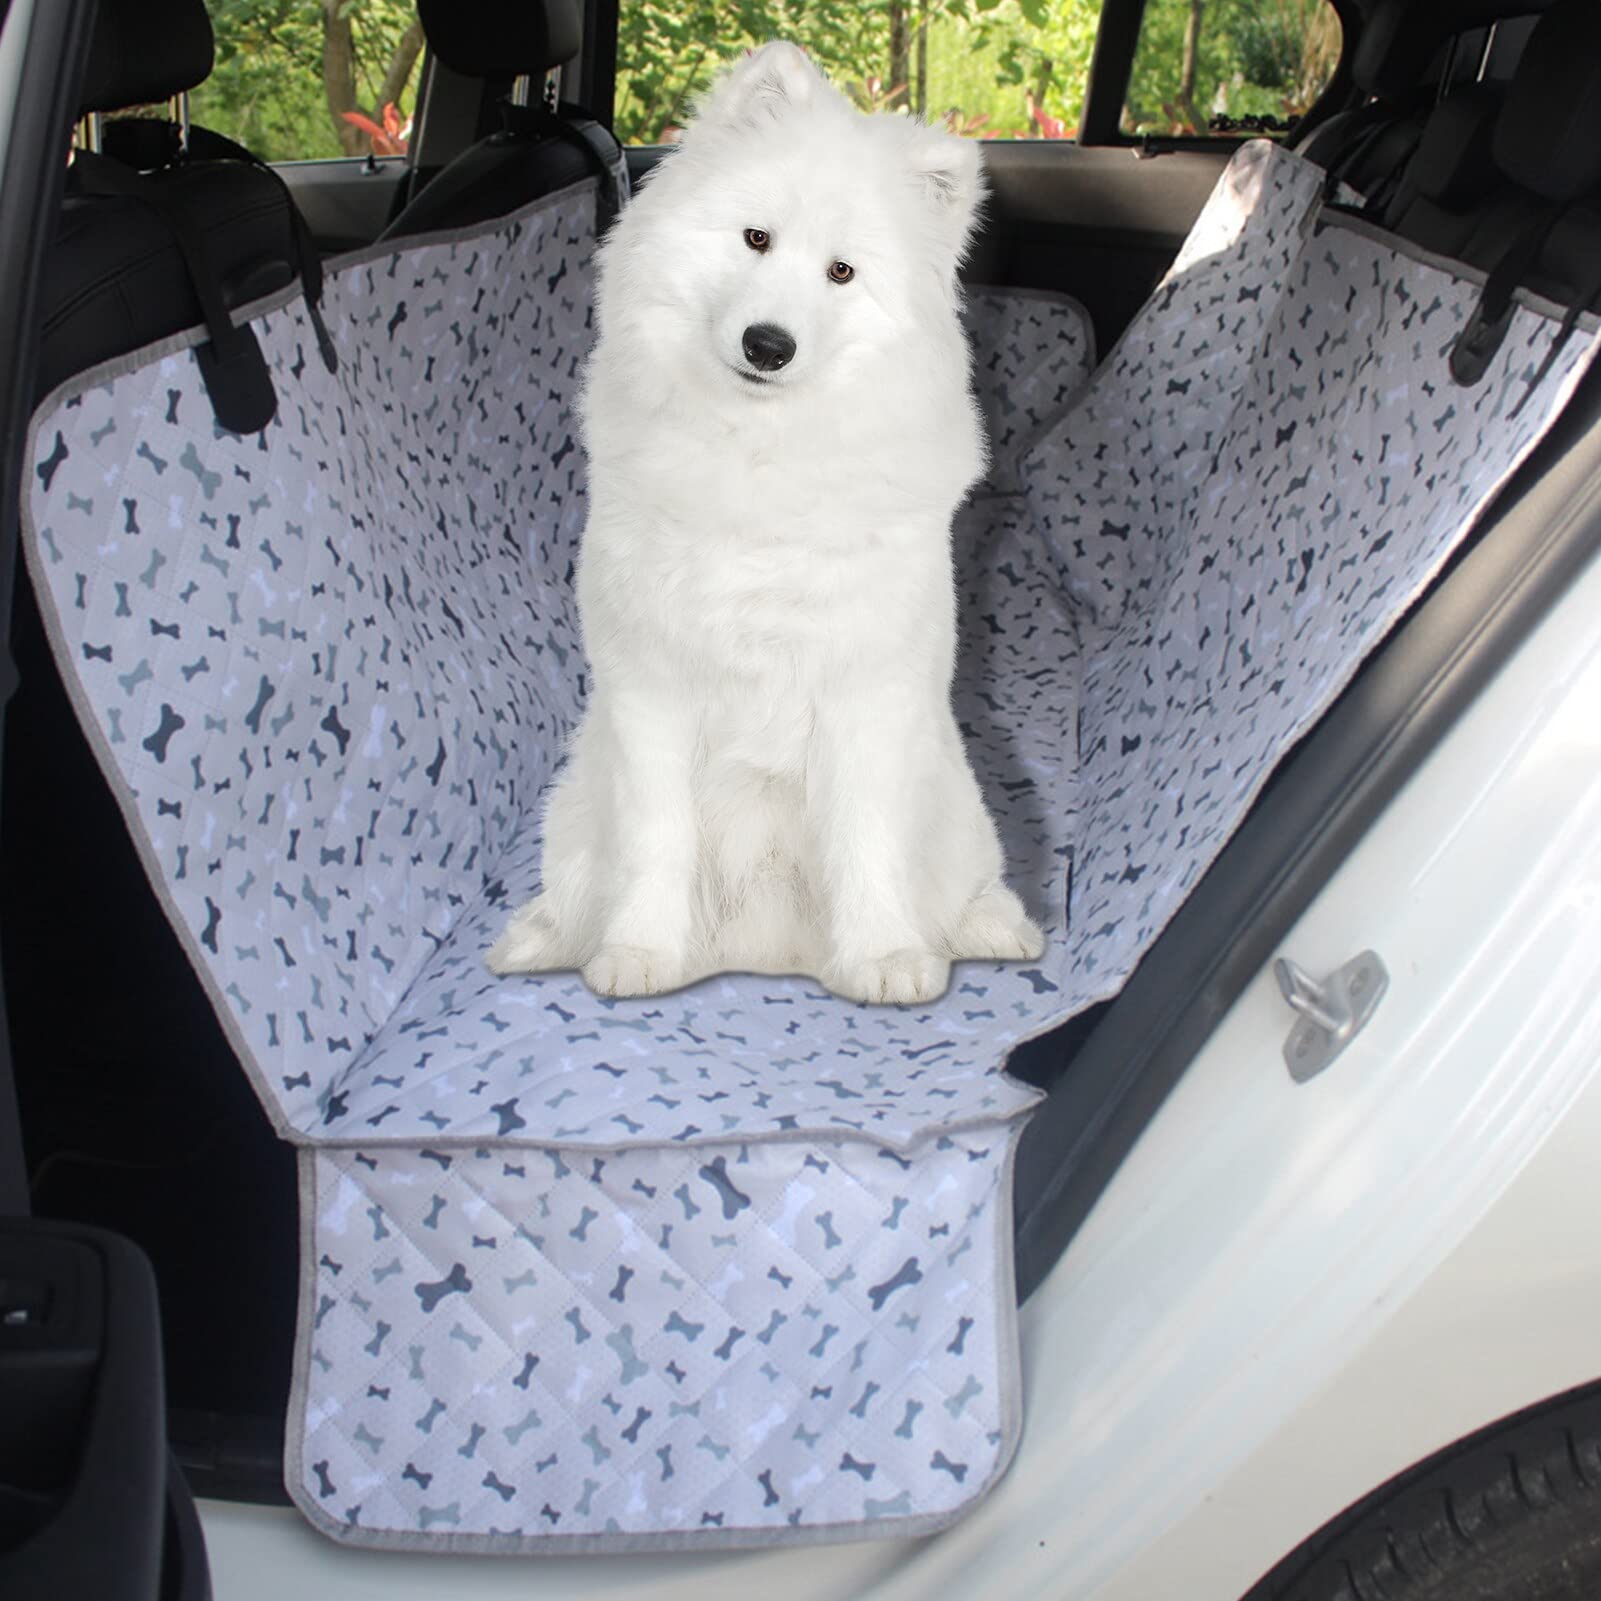 JIAWEIIY Hund Autositzbezug Wasserdicht Haustier Hund Reise Matte Mesh Folding Car Travel Seat Pets Cover Sitze Protector Mat Safety Carrier